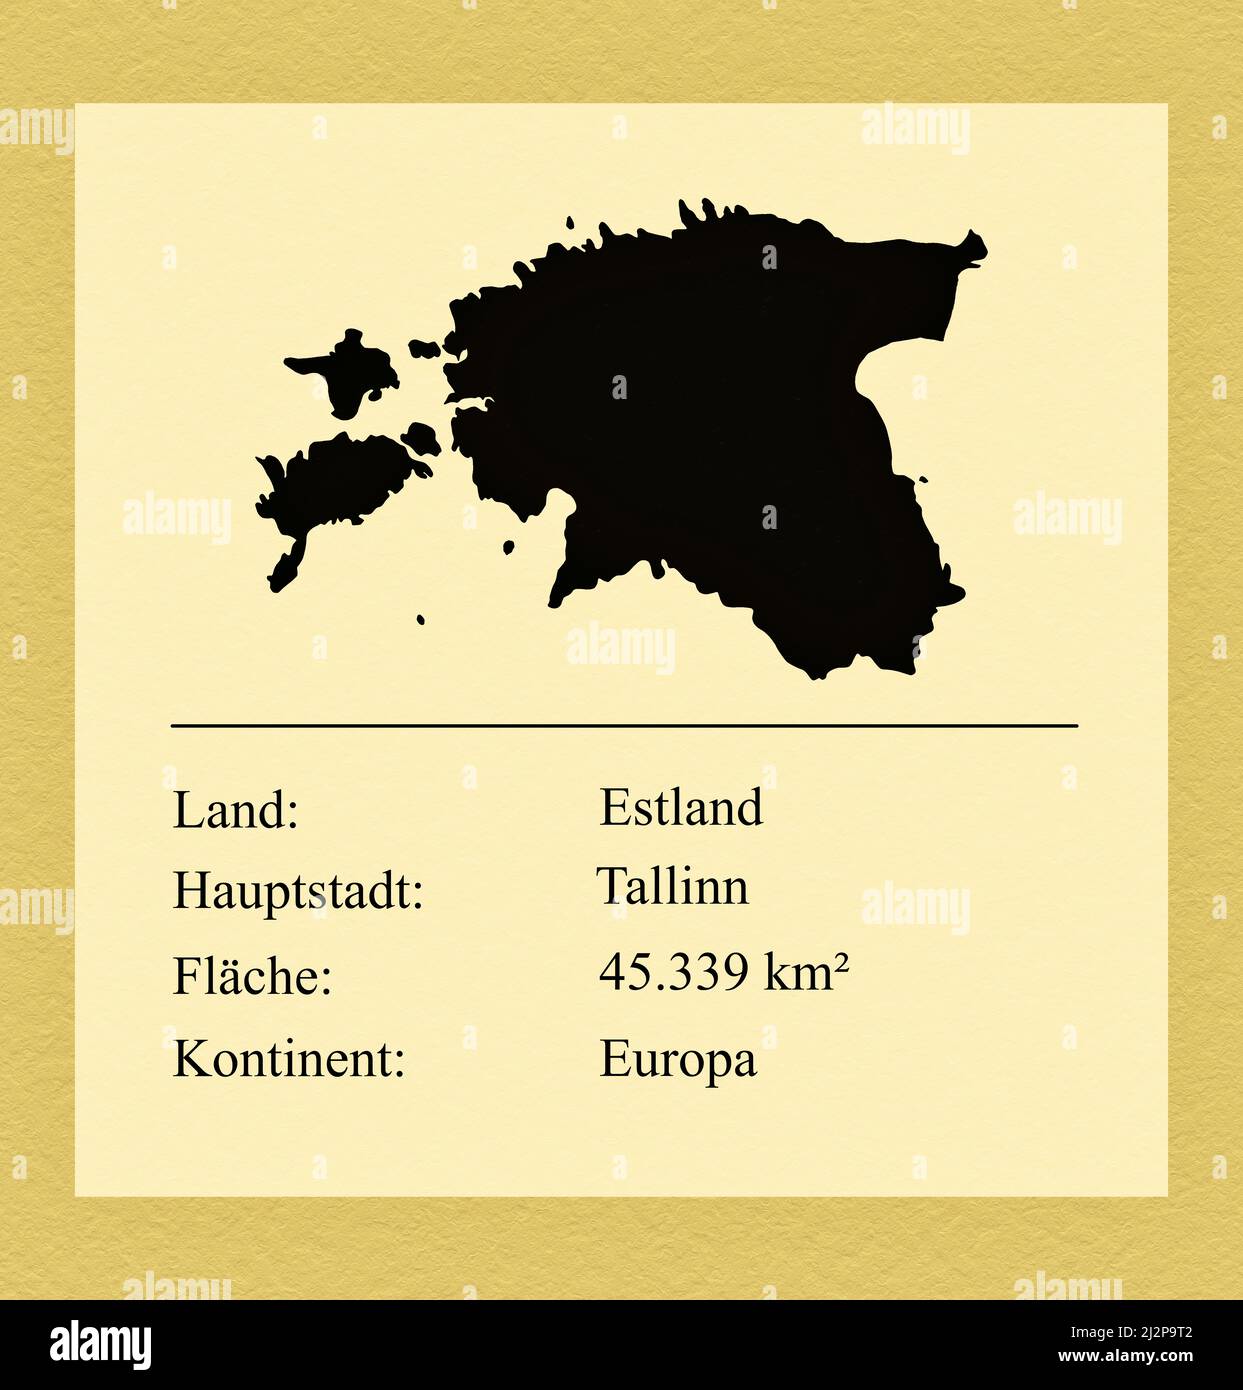 Umrisse des Landes Estland, darunter ein kleiner Steckbrief mit Ländernamen, Hauptstadt, Fläche und Kontinent Foto Stock